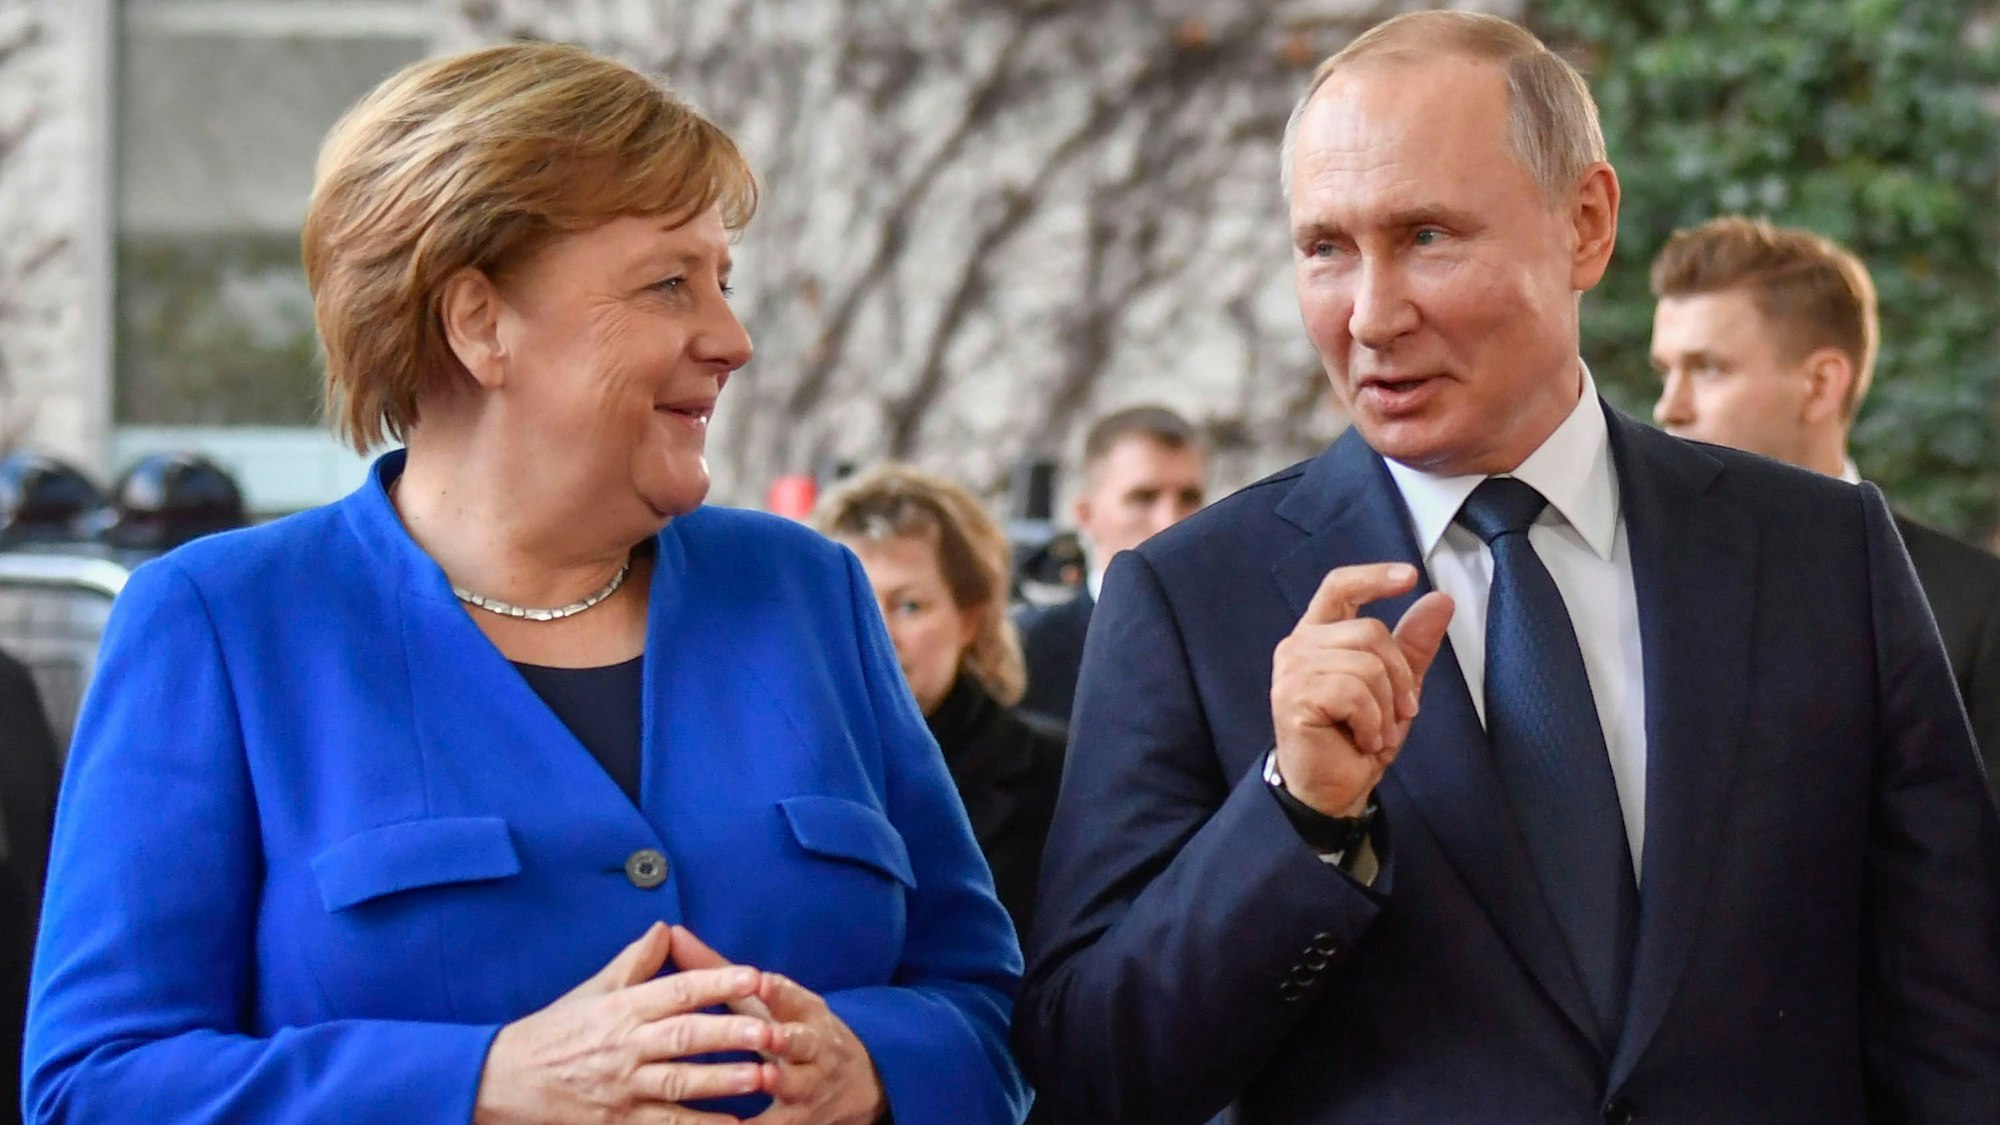 Bundeskanzlerin Angela Merkel begrüßt den russischen Präsidenten Wladimir Putin (C) und den Generalsekretär der Vereinten Nationen (UN) Antonio Guterres bei seiner Ankunft zum Friedensgipfel über Libyen im Kanzleramt in Berlin am 19. Januar 2020. - Die Staats- und Regierungschefs der Welt kommen am 19. Januar 2020 in Berlin zusammen, um einen neuen Vorstoß für den Frieden in Libyen zu unternehmen und zu verhindern, dass das konfliktgeschüttelte Land zu einem „zweiten Syrien“ wird.